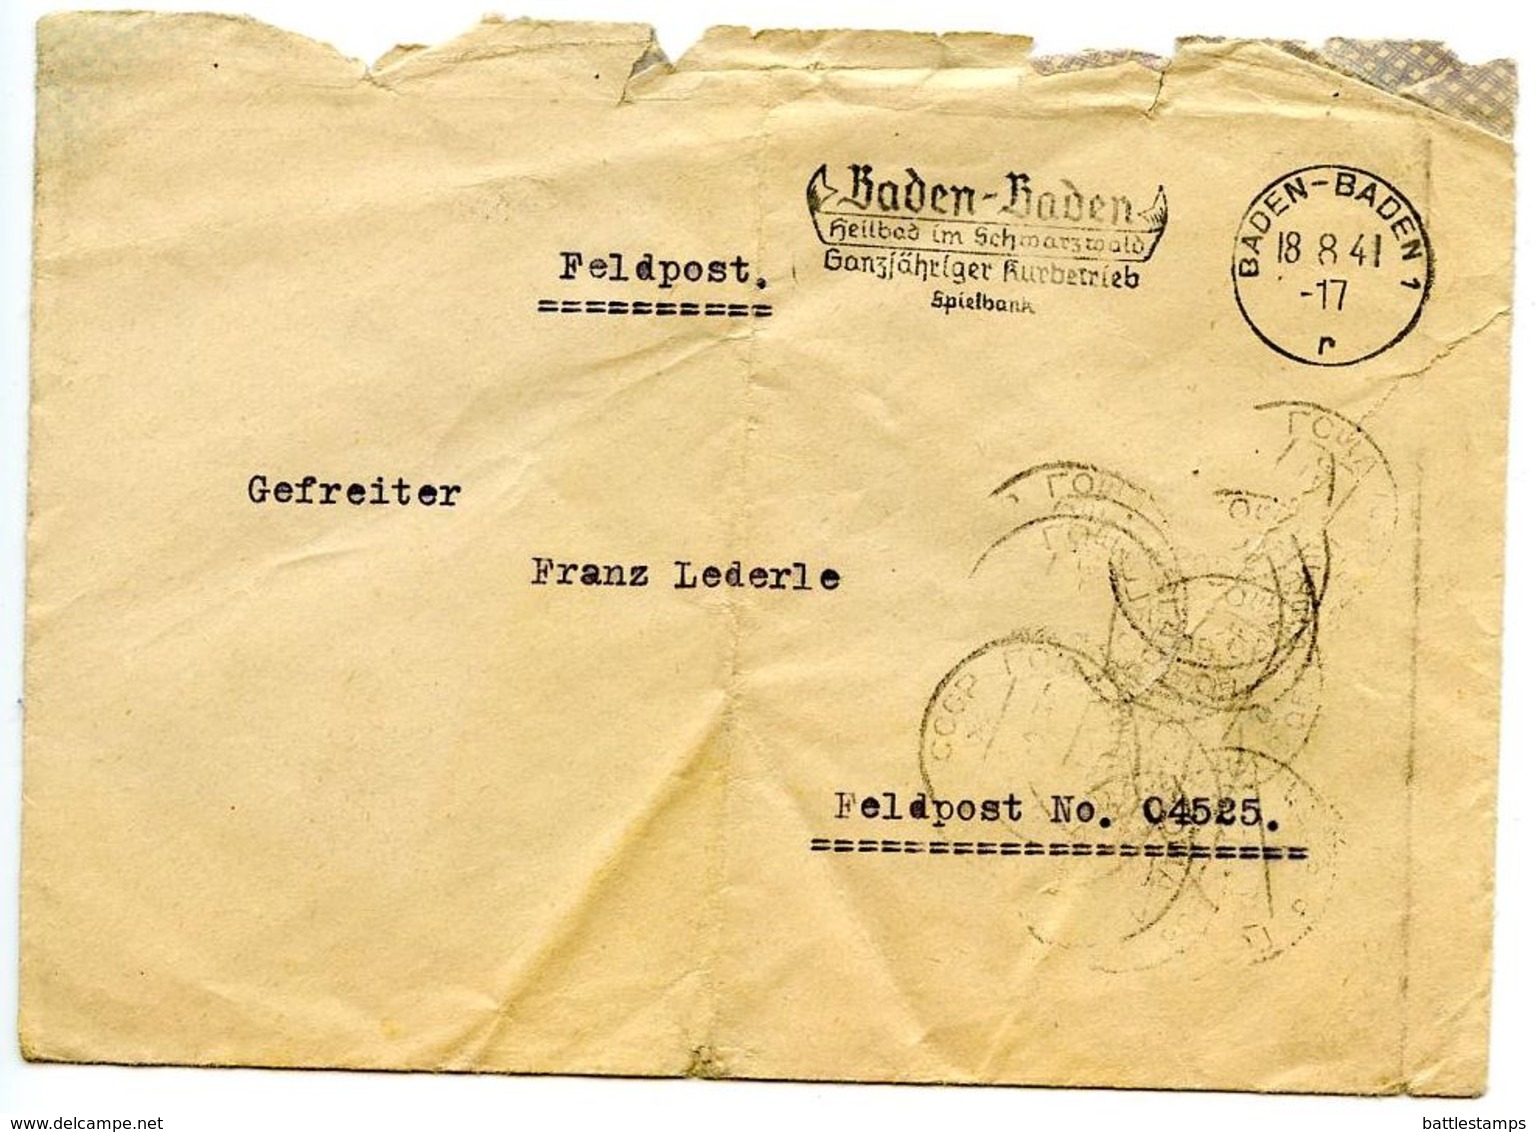 Germany 1941 WWII Cover Baden-Baden To Feldpost 04525 W/ Soviet Postmarks - Feldpost 2e Wereldoorlog